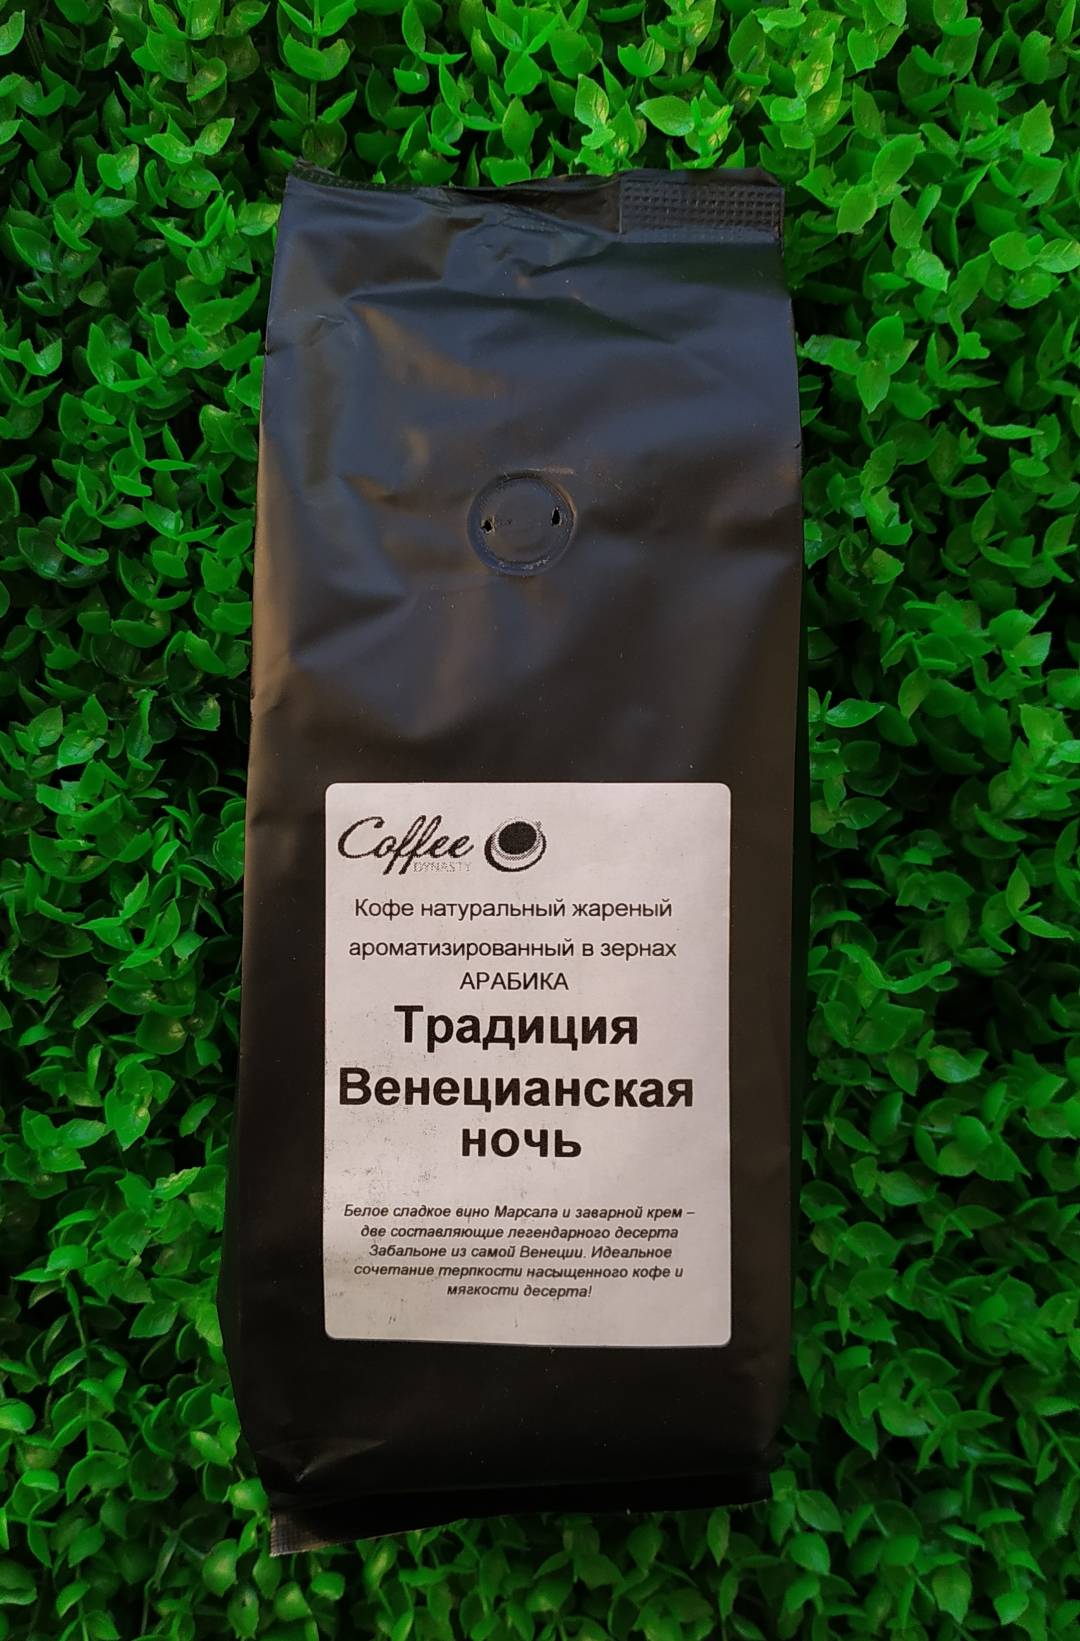 Купить онлайн Кофе Традиция в интернет-магазине Беришка с доставкой по Хабаровску и по России недорого.